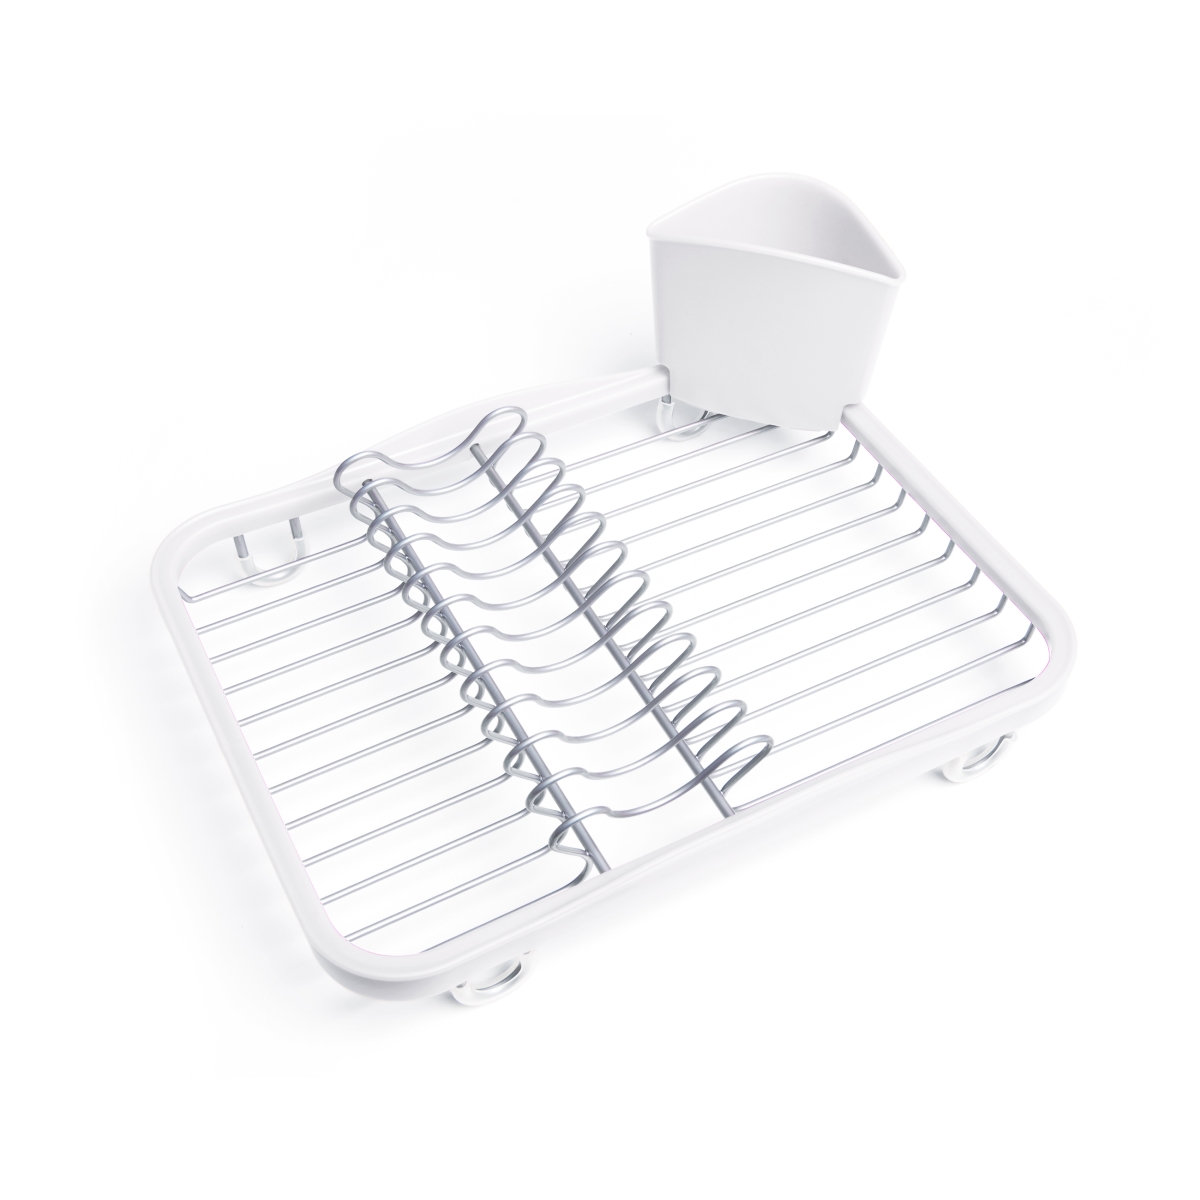 330065-670 Sinkin Dish Drying Rack - White & Nickel